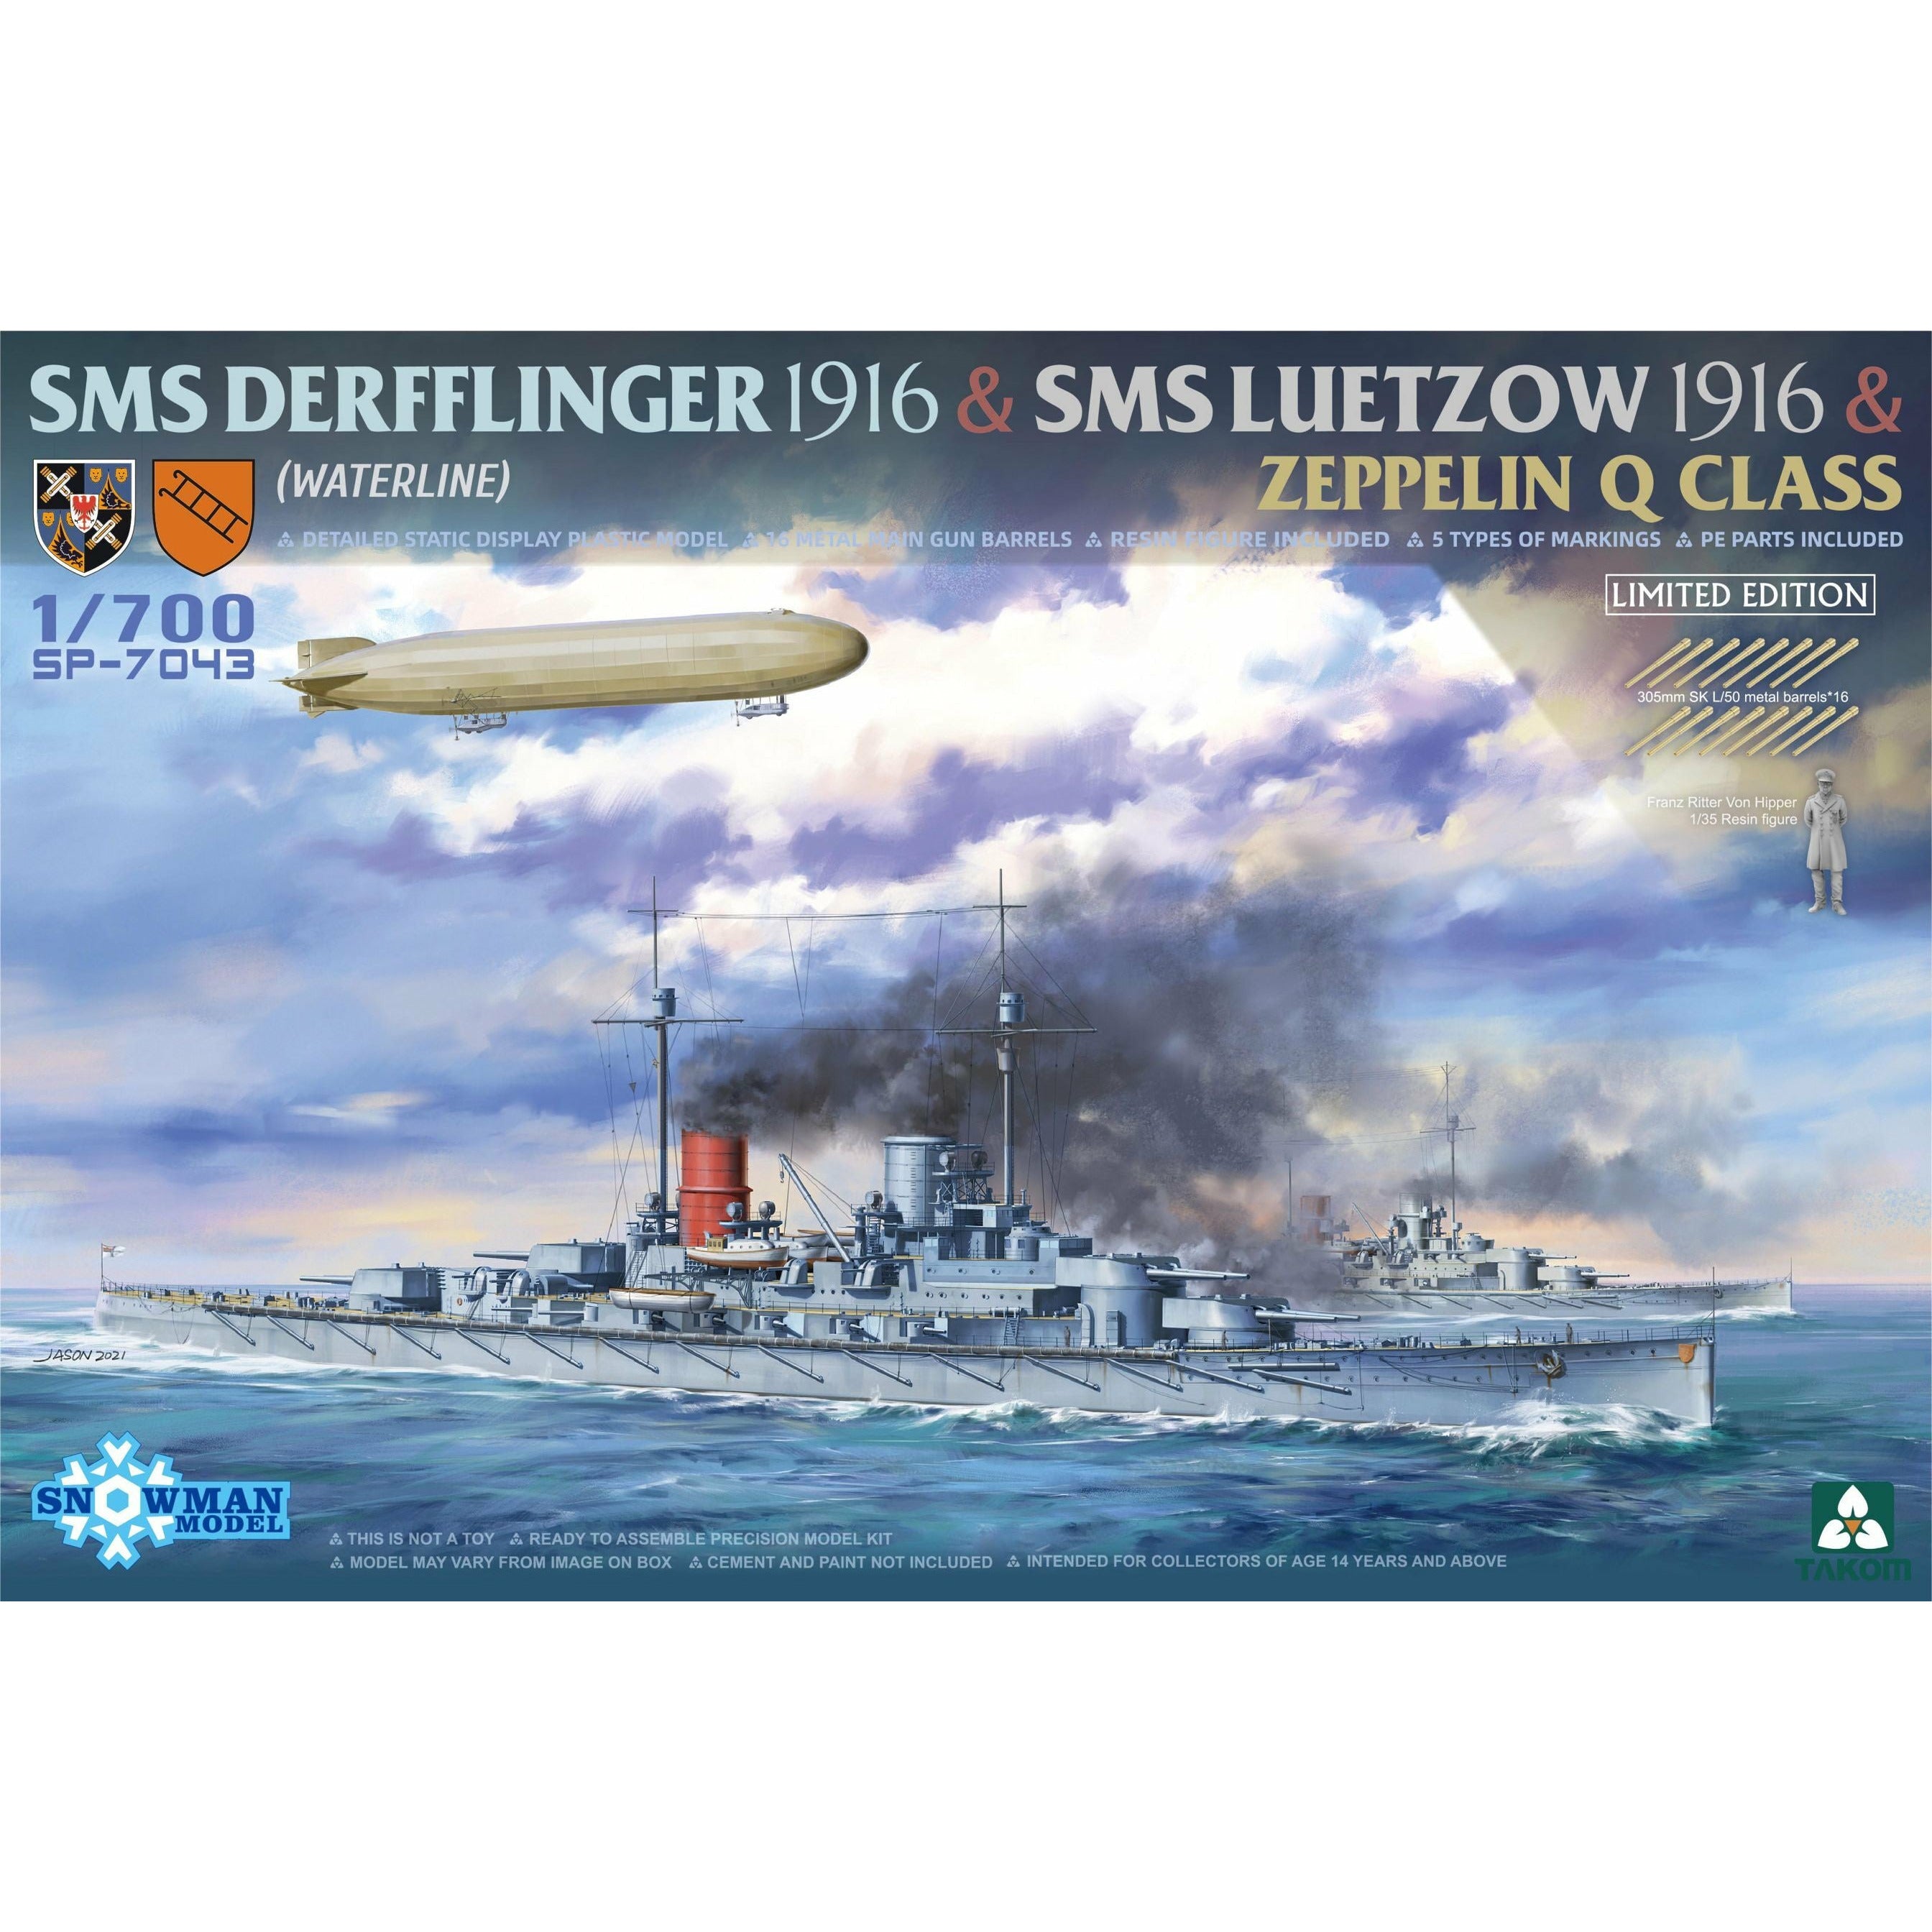 SMS Derfflinger 1916 & SMS Lützow 1916 & Zeppelin Q-class 1/700 Model Ship Kit #SP-7043 by Takom